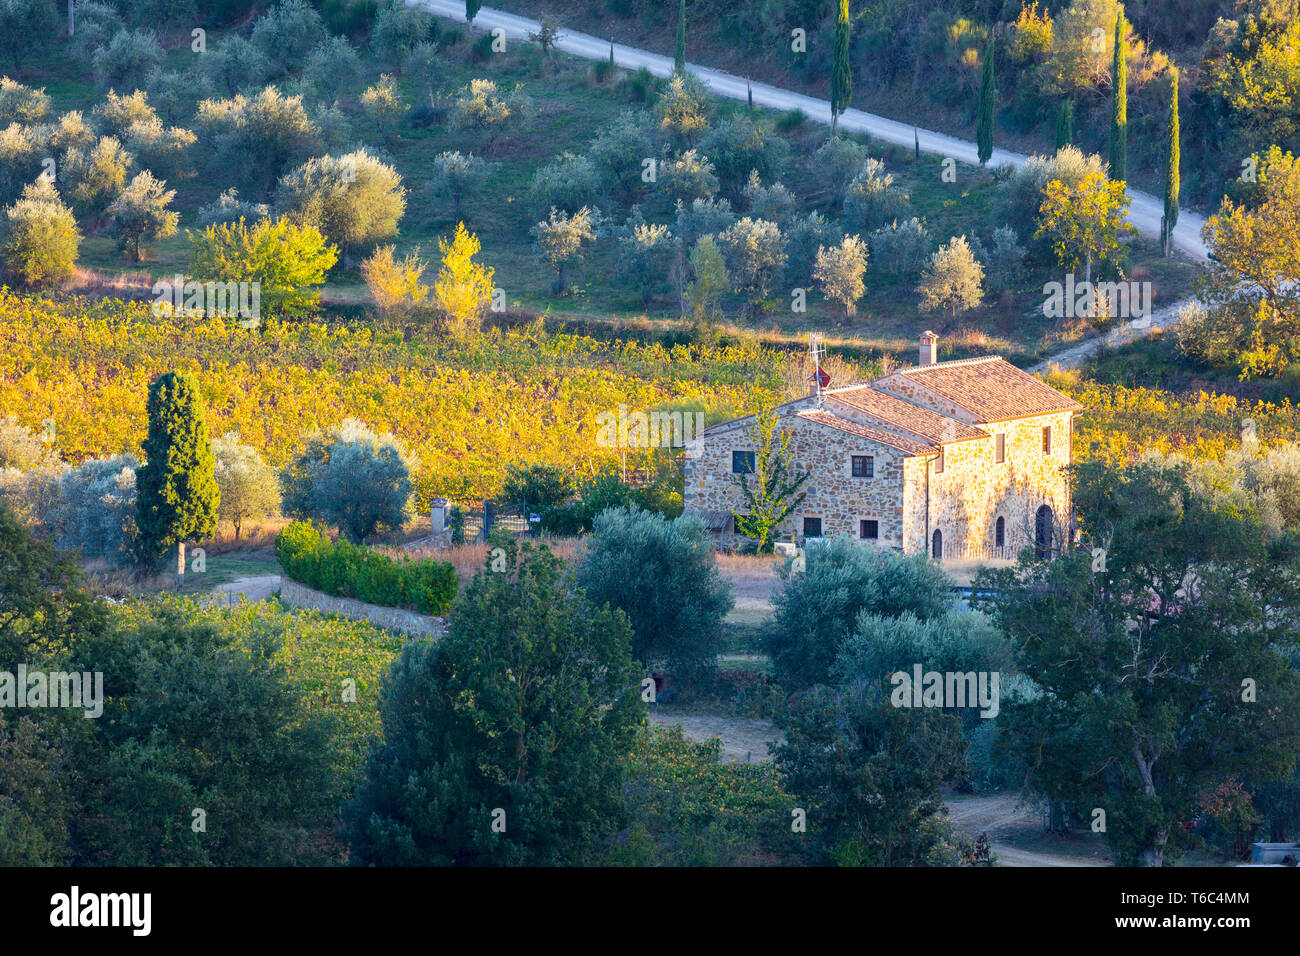 Italie, Toscane, Province de Sienne, Montalcino, mas en pierre entouré de vignes à l'automne Banque D'Images